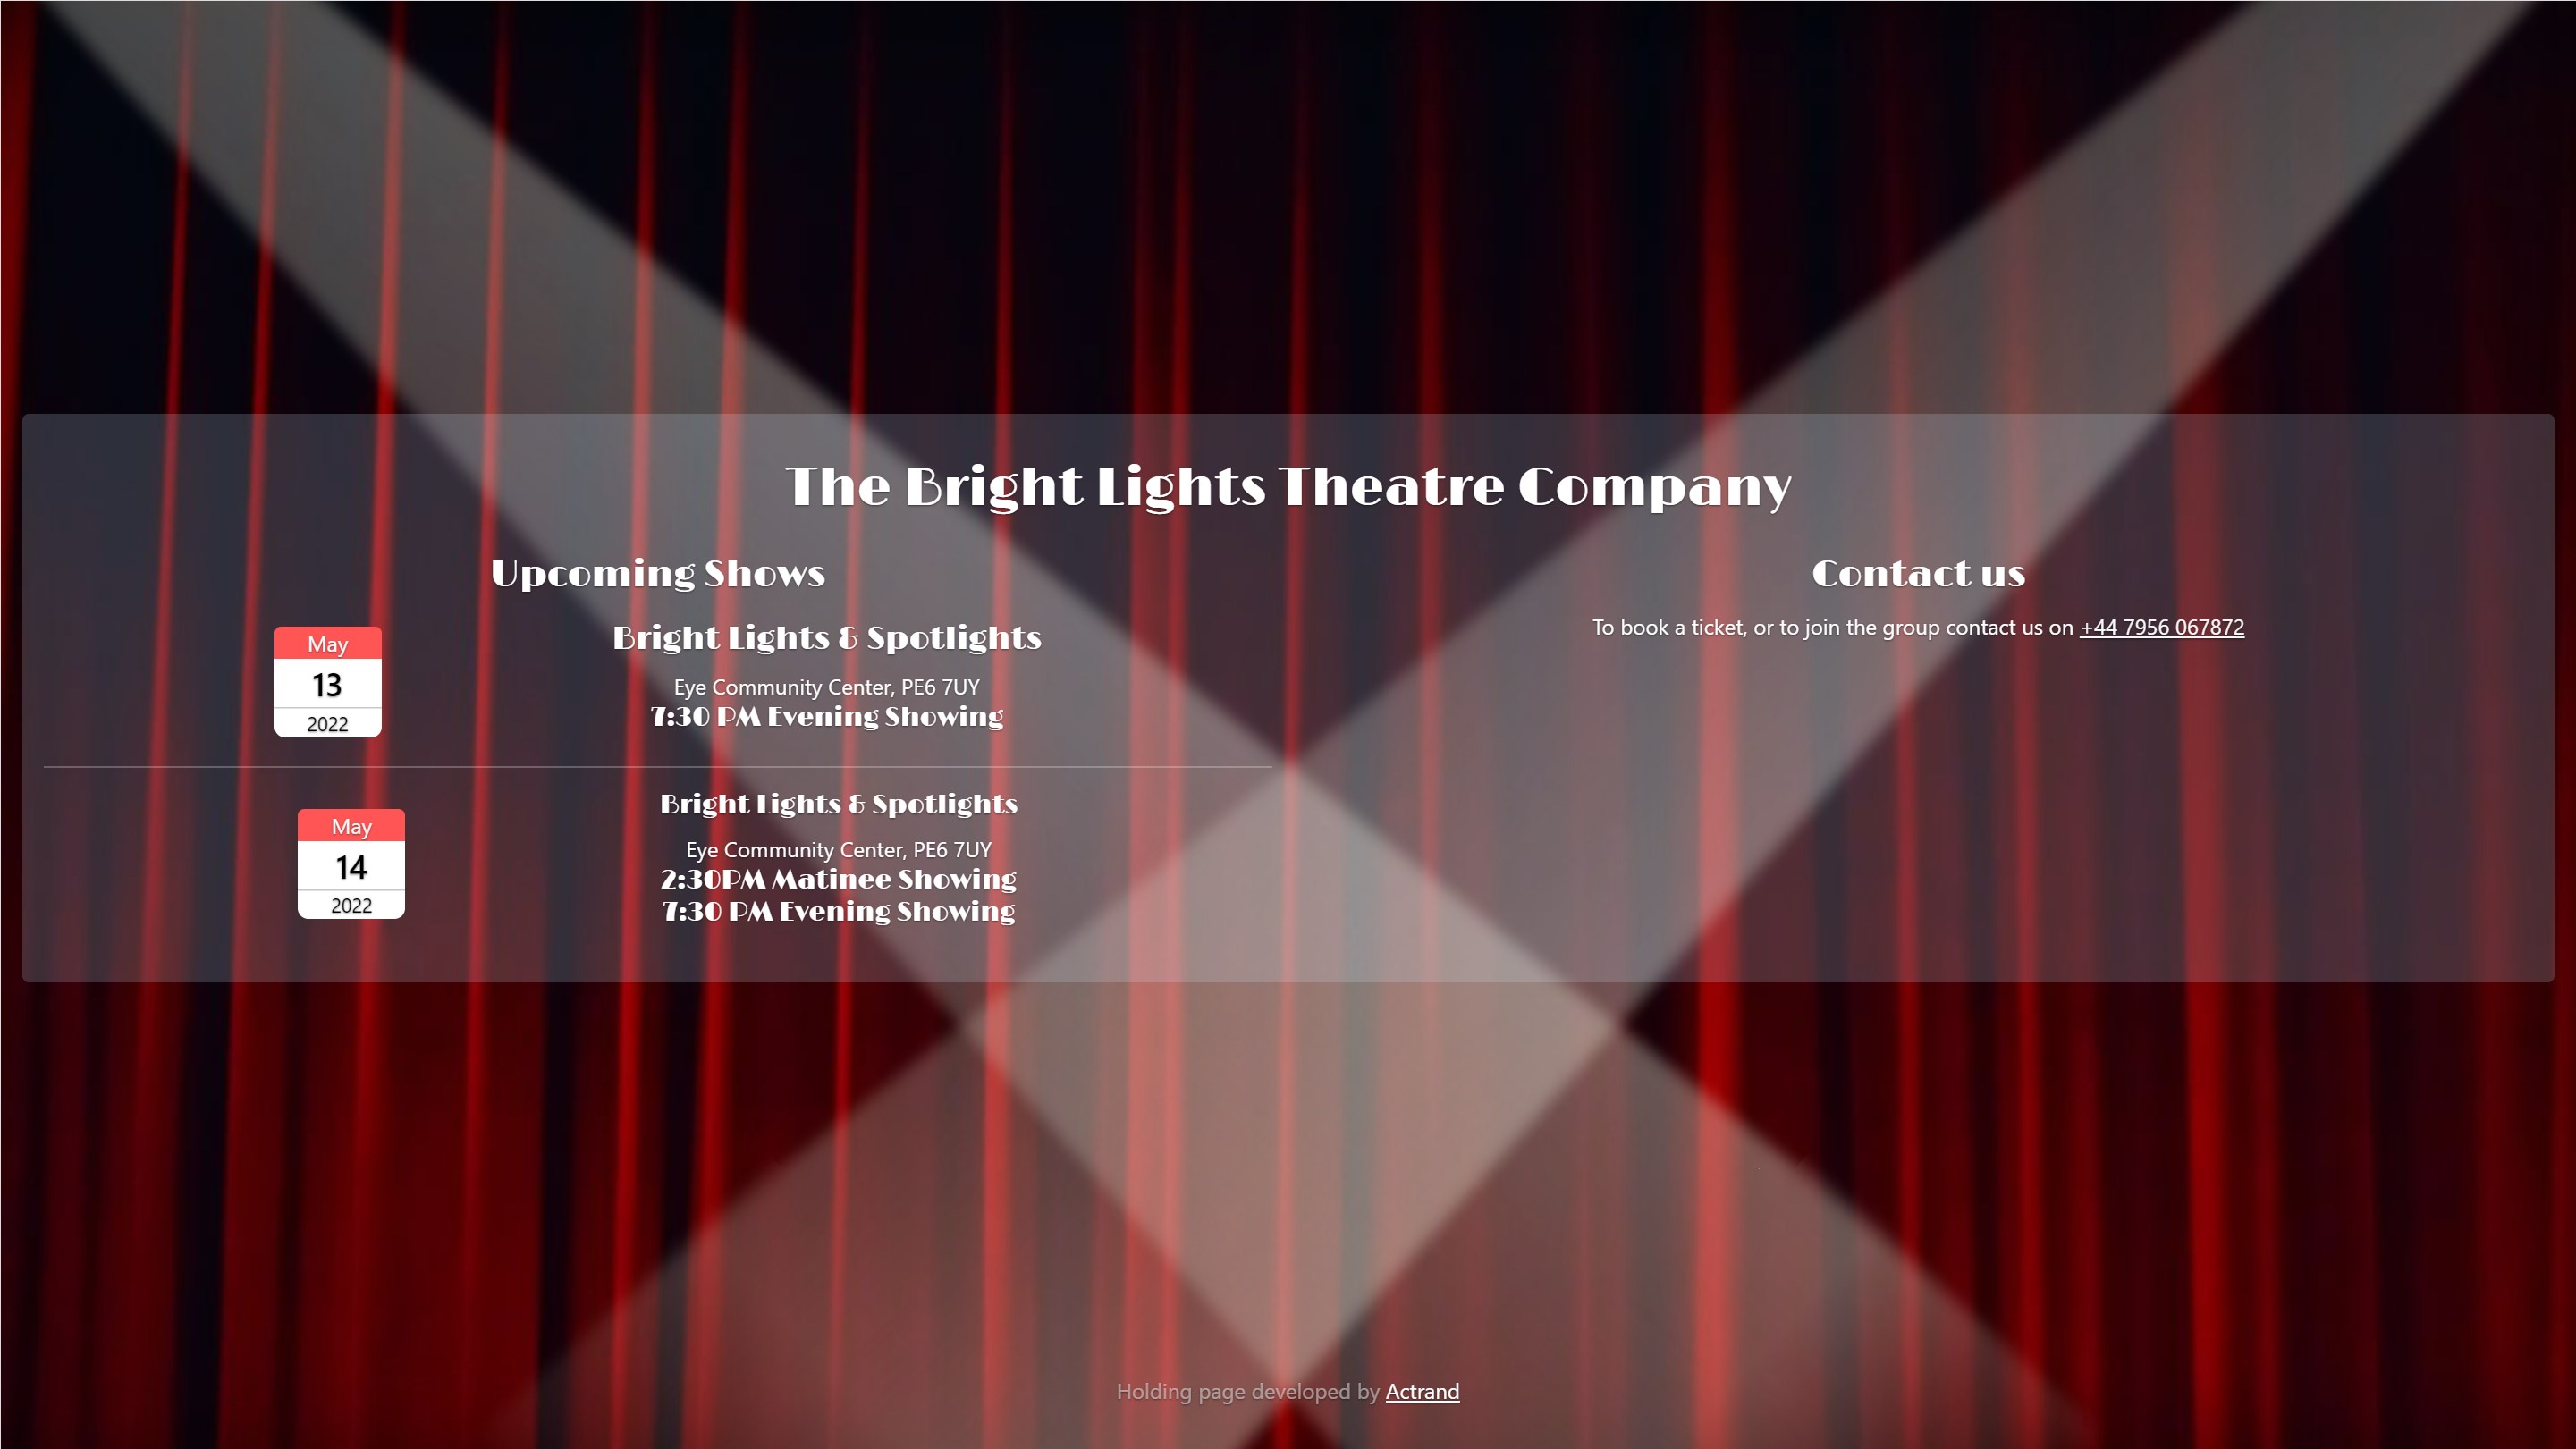 The Bright Lights Theatre Company